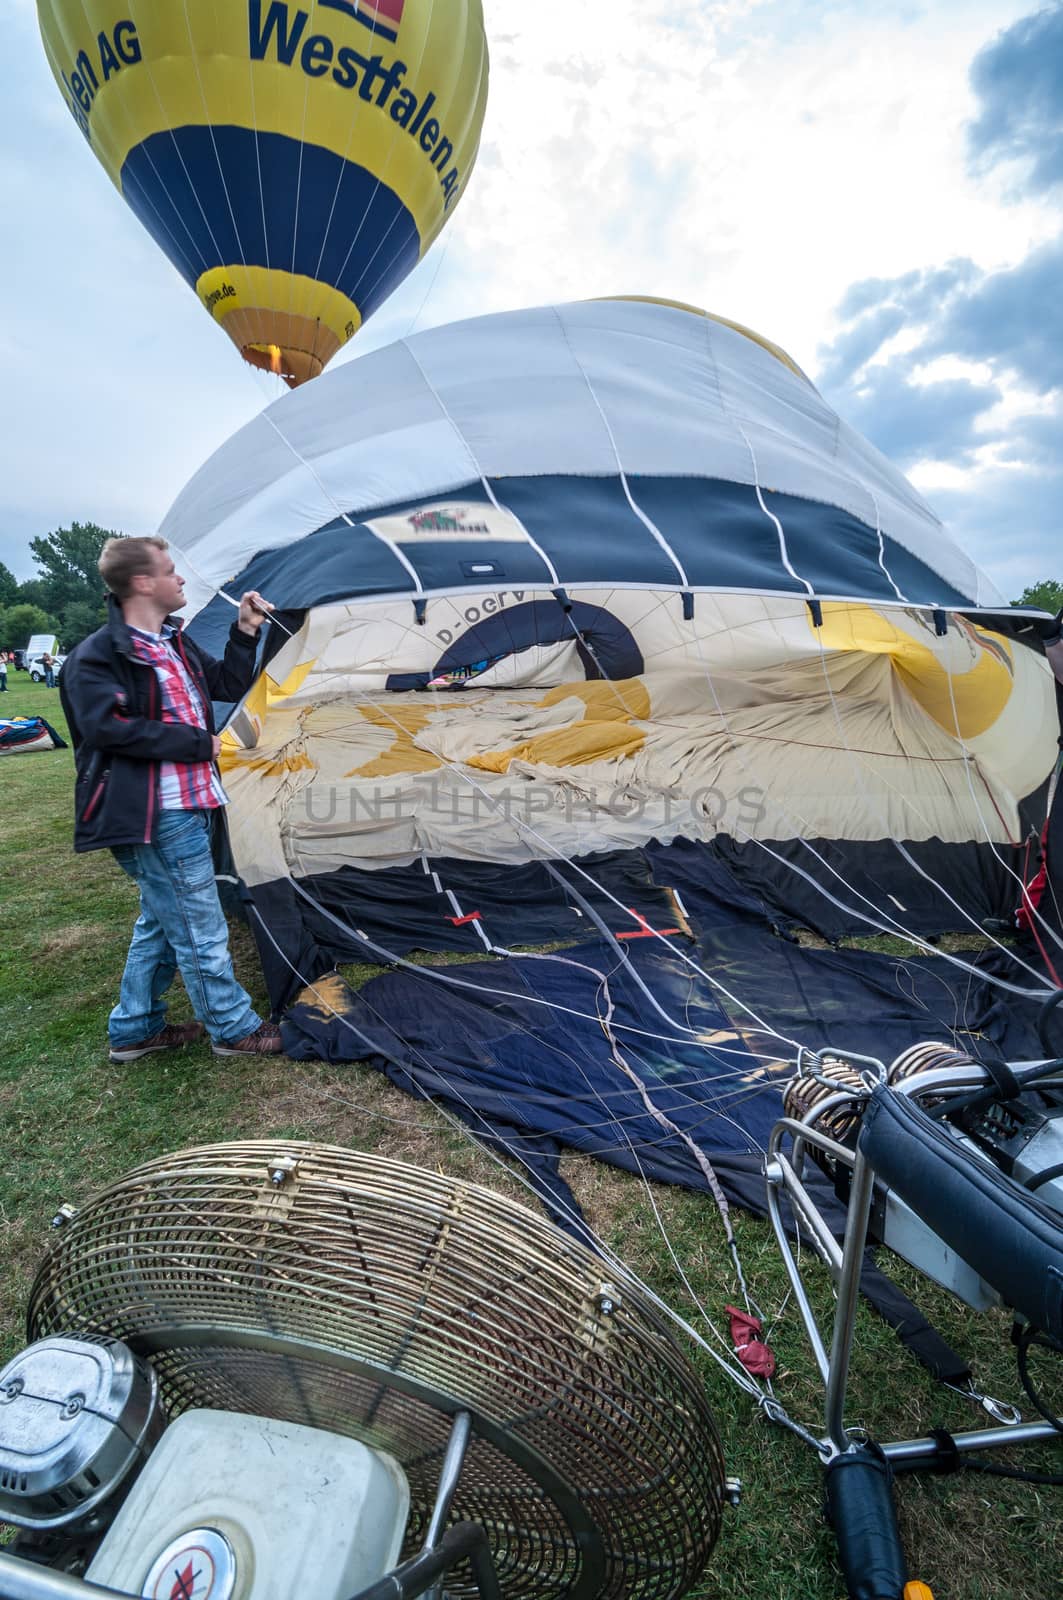 Hot air balloon festival in Muenster, Germany by Jule_Berlin